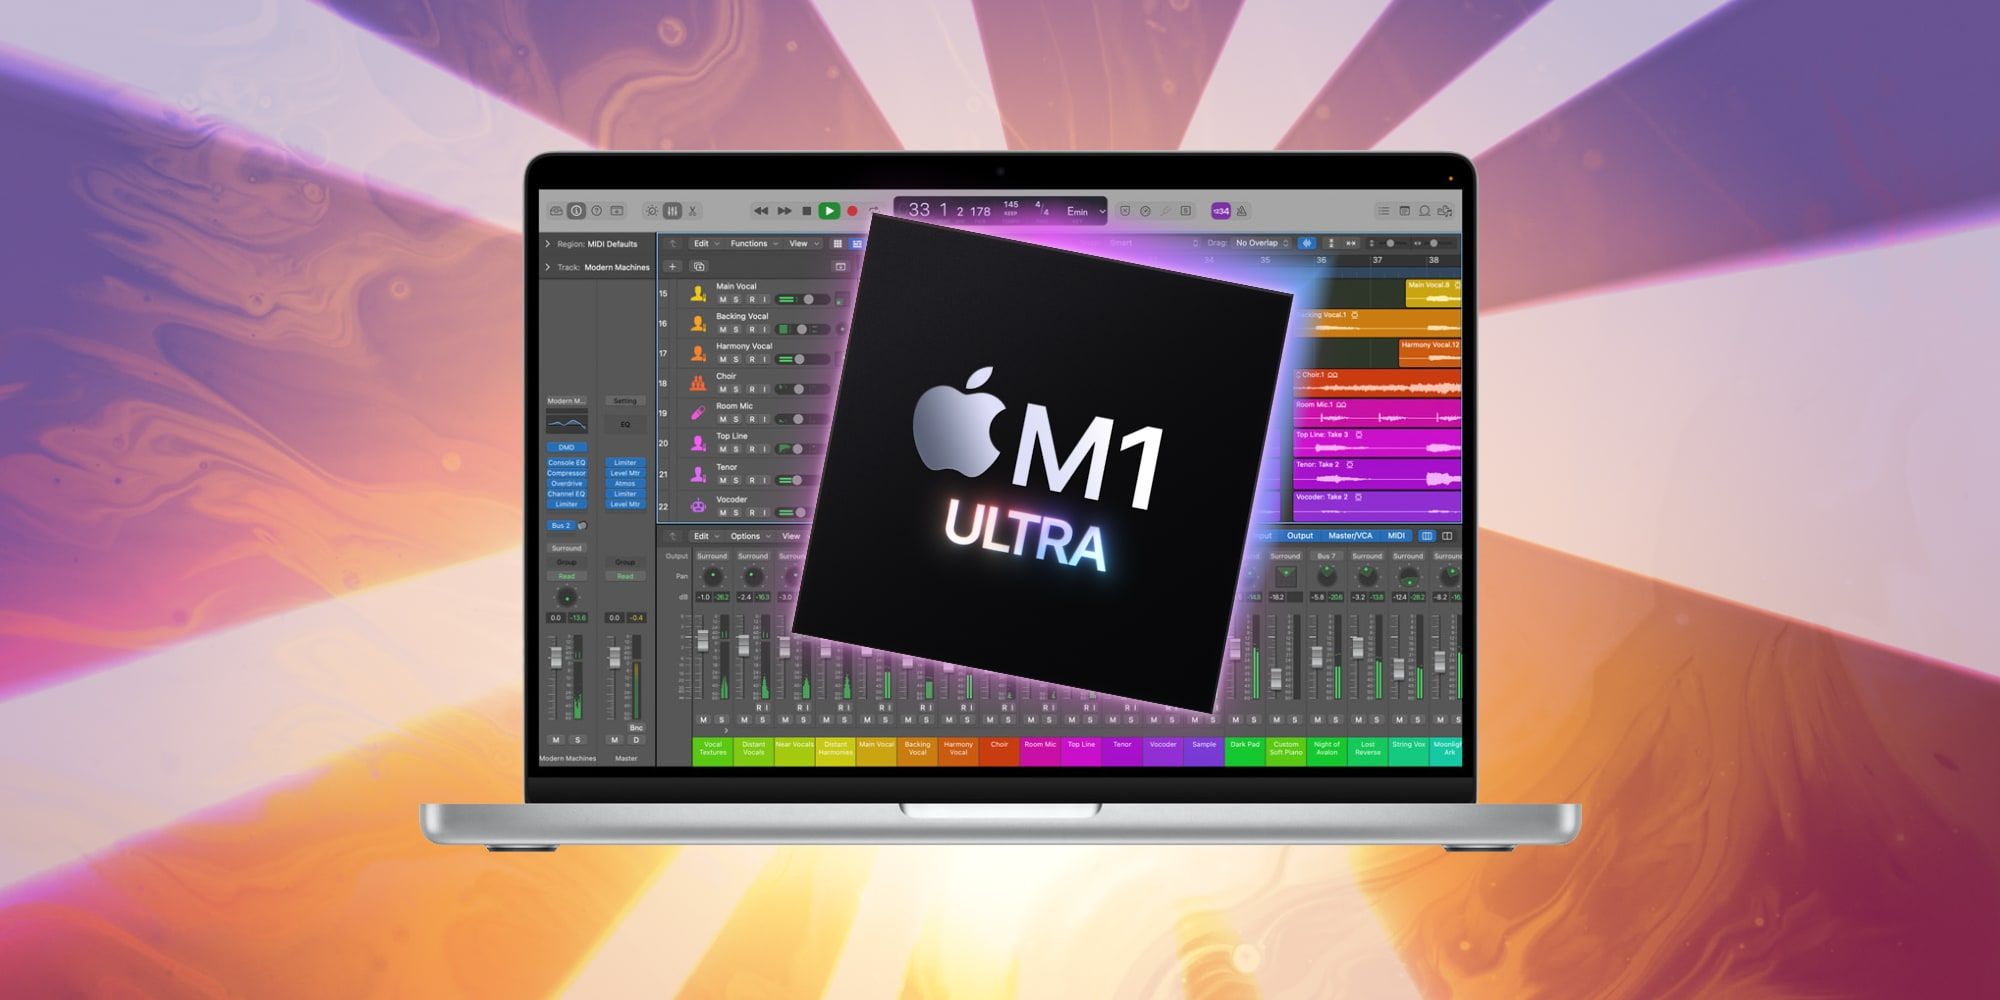 ¿Llegará el chip M1 Ultra de Apple al MacBook Pro?  Esto es lo que sabemos